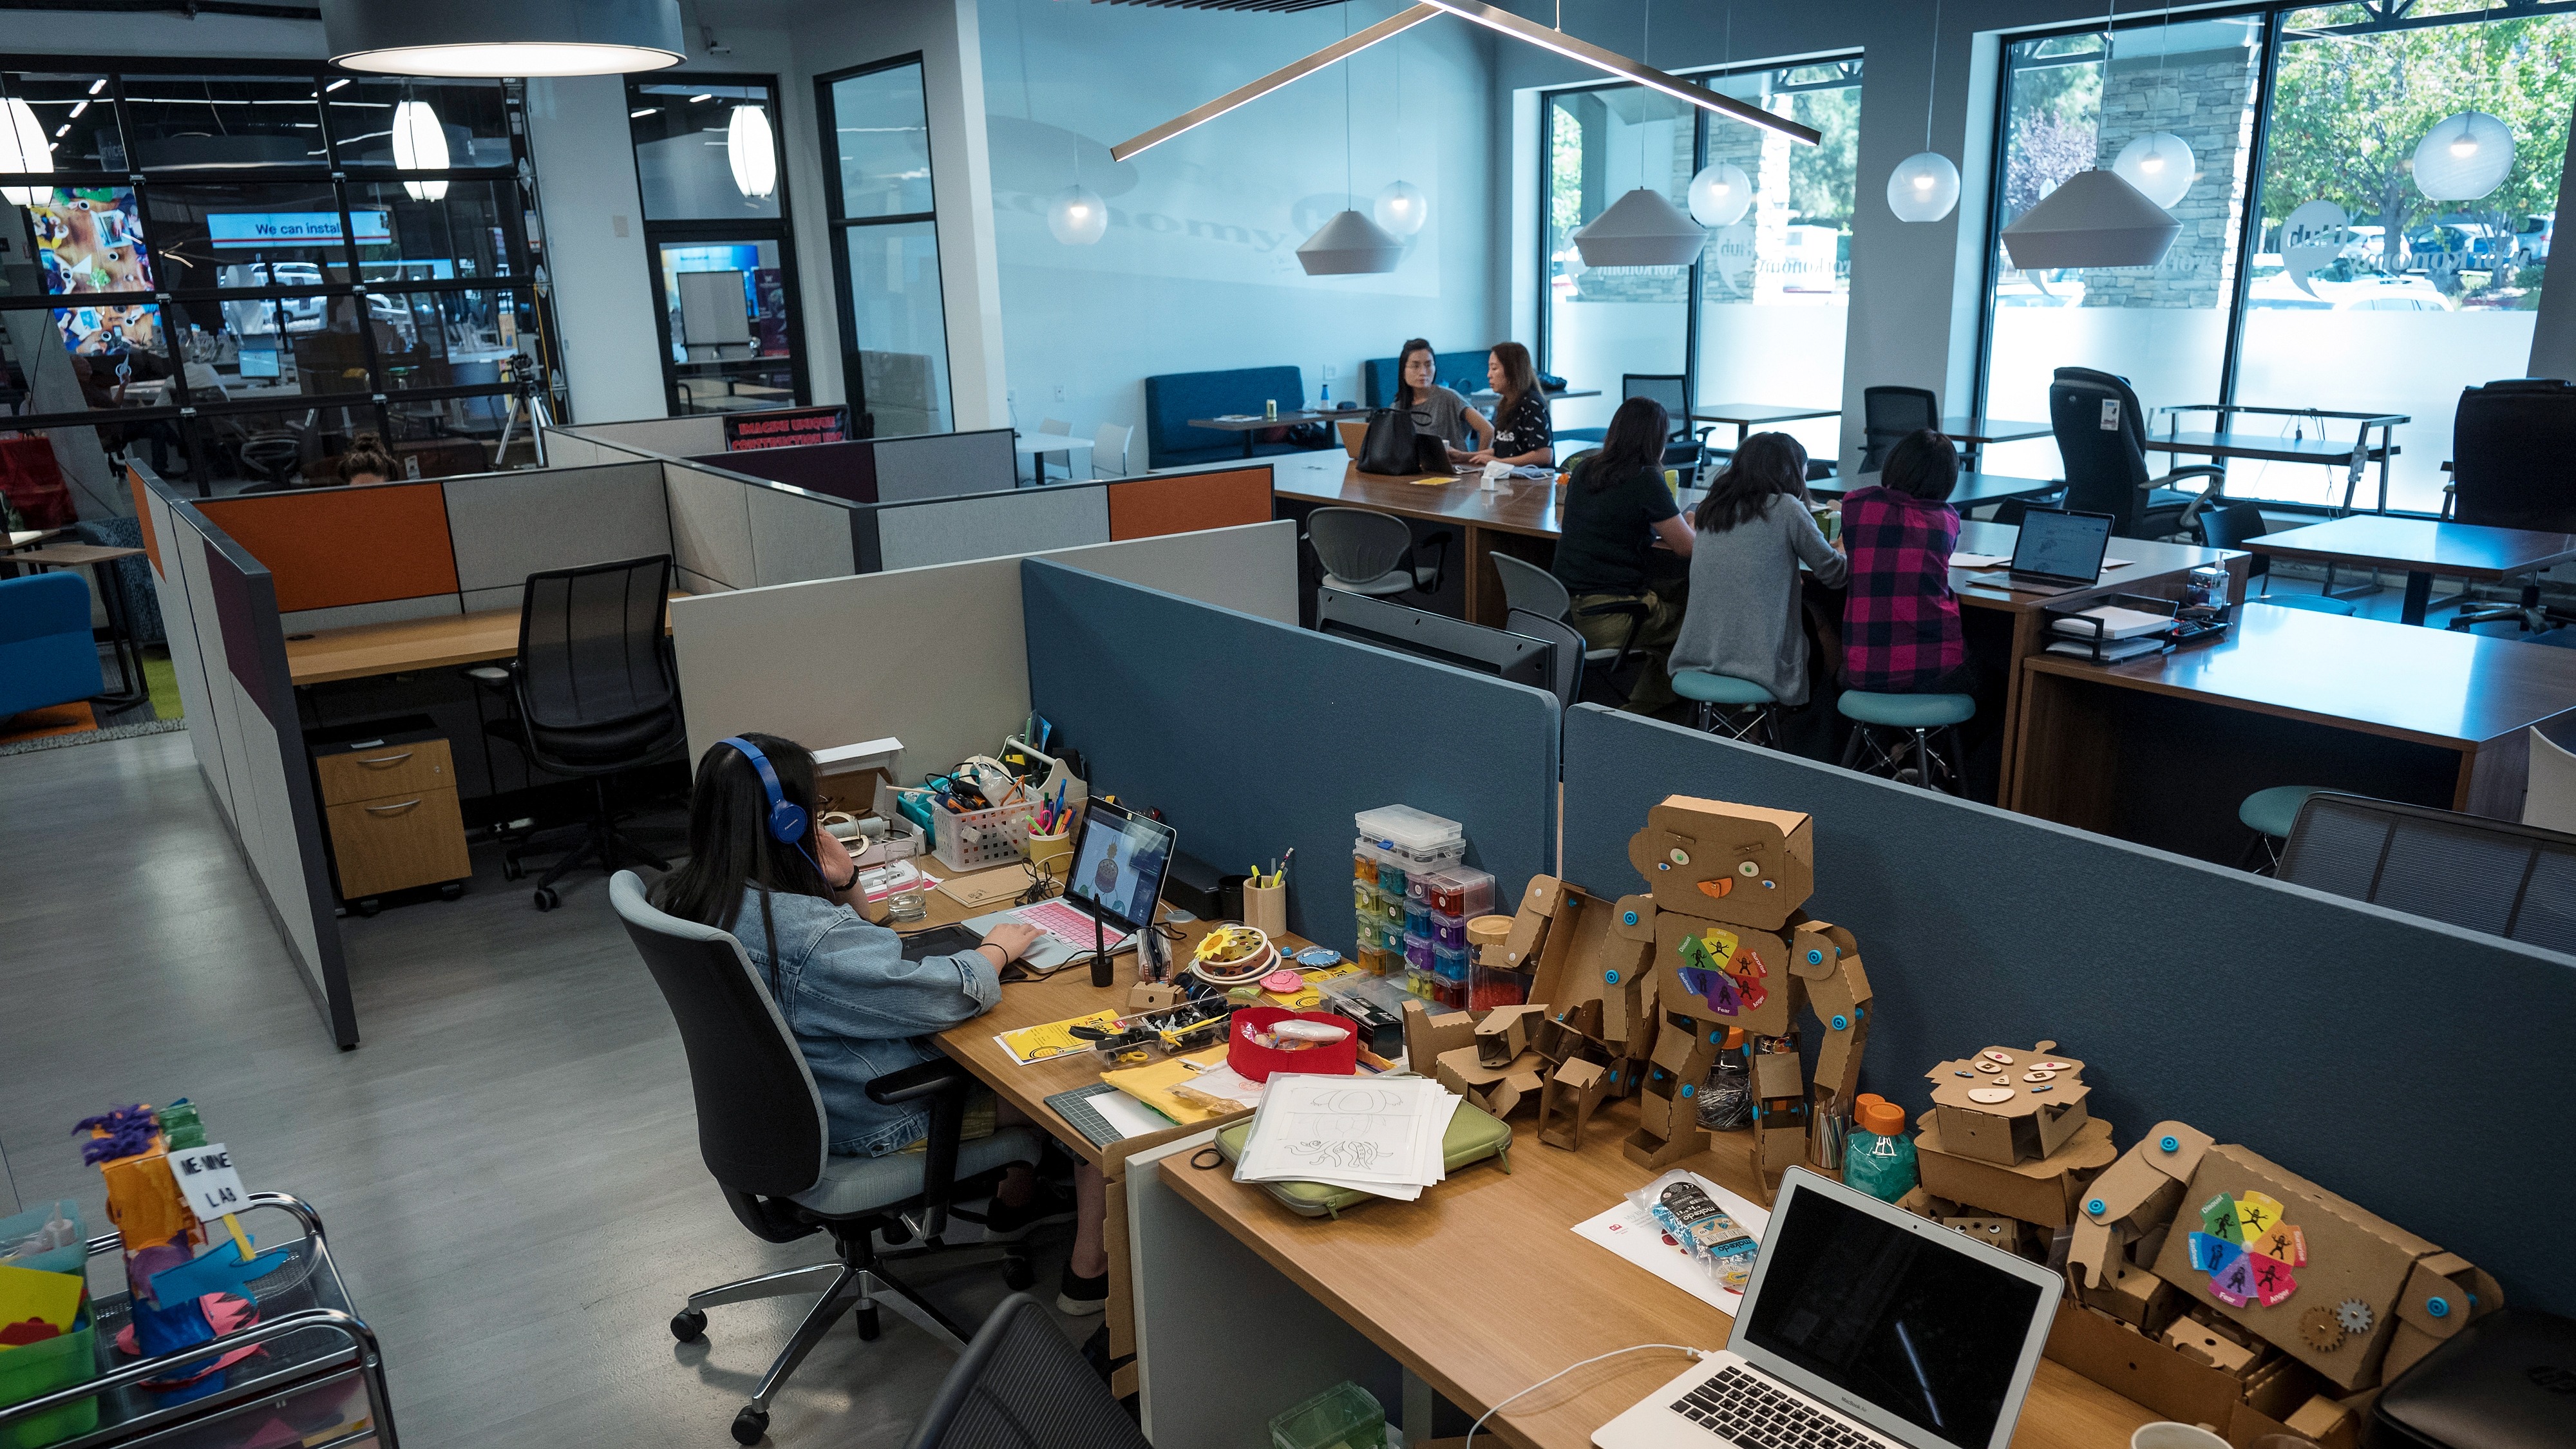 Office Deppot 'le entra' al coworking con proyecto piloto – El Financiero